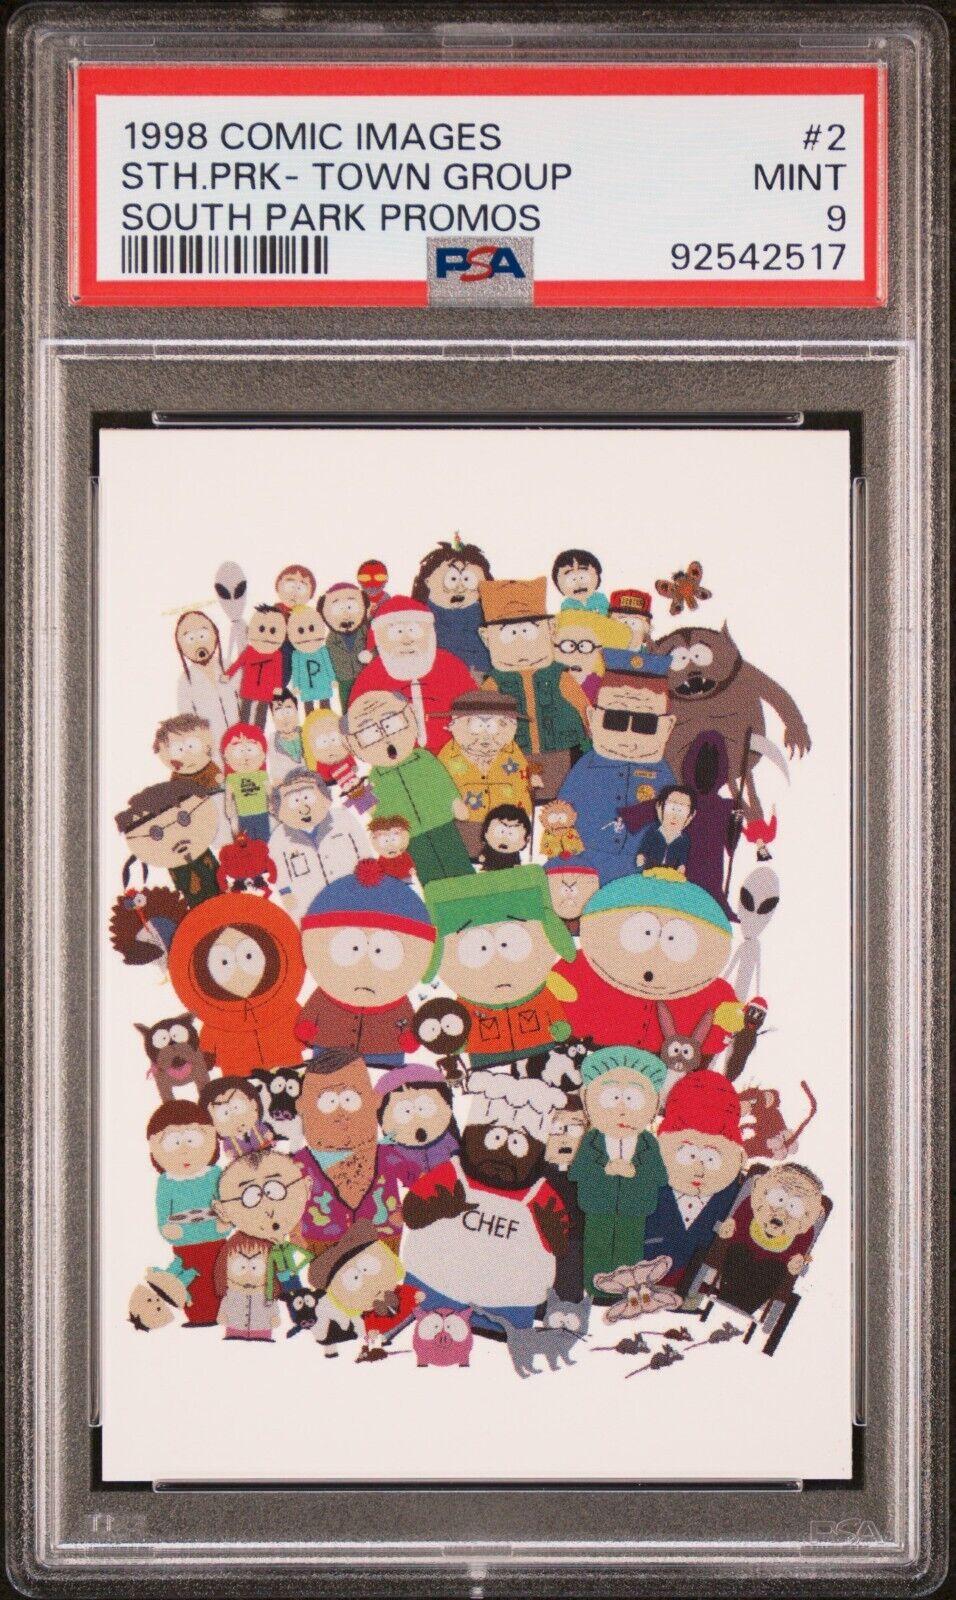 1998 Comic Images South Park Promos Town Group #2 - PSA 9 MINT